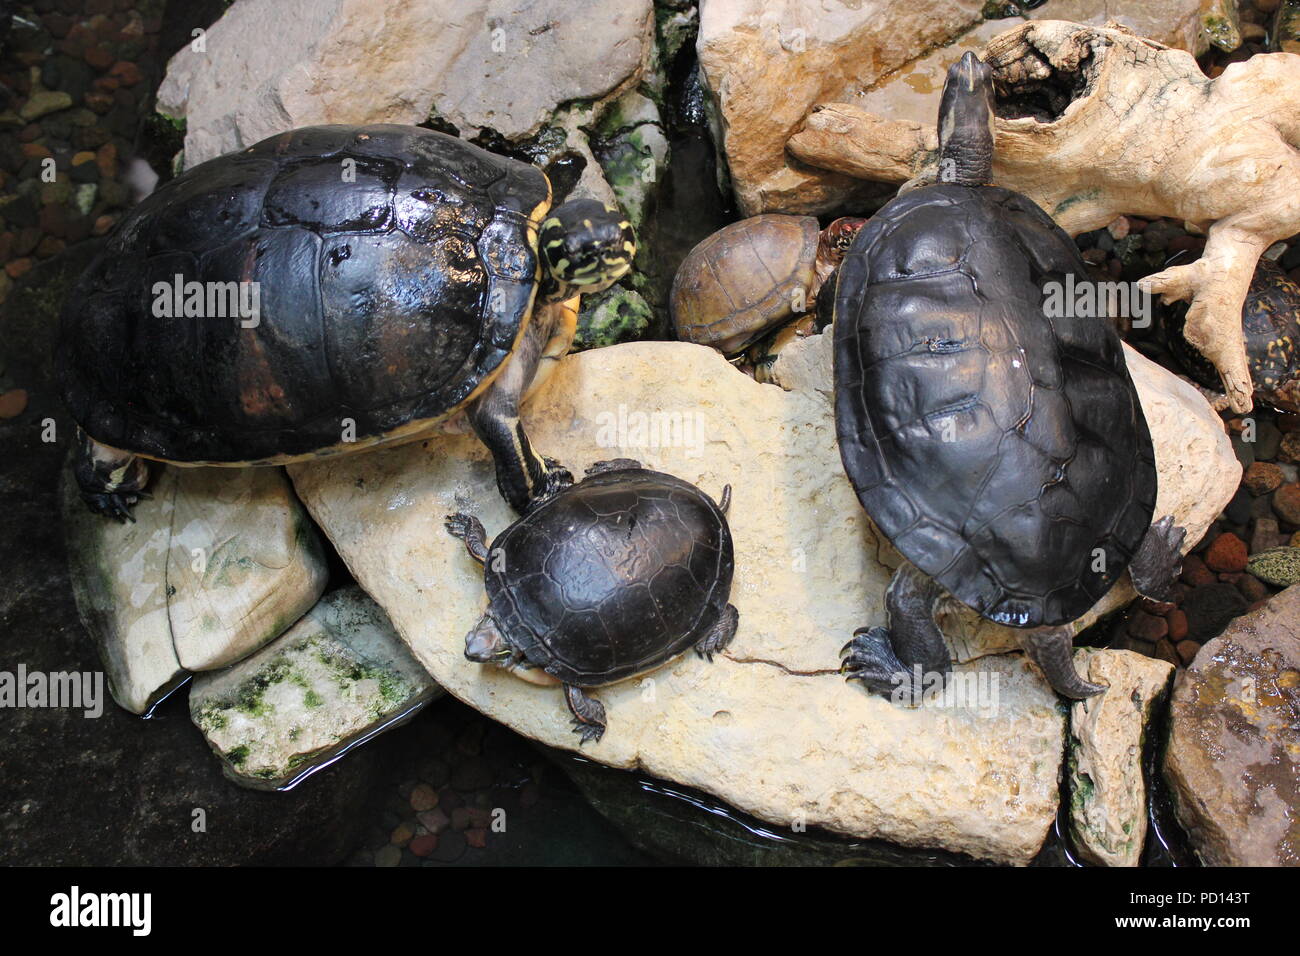 Tartarughe dipinte che si godono nel loro habitat naturale. Foto Stock